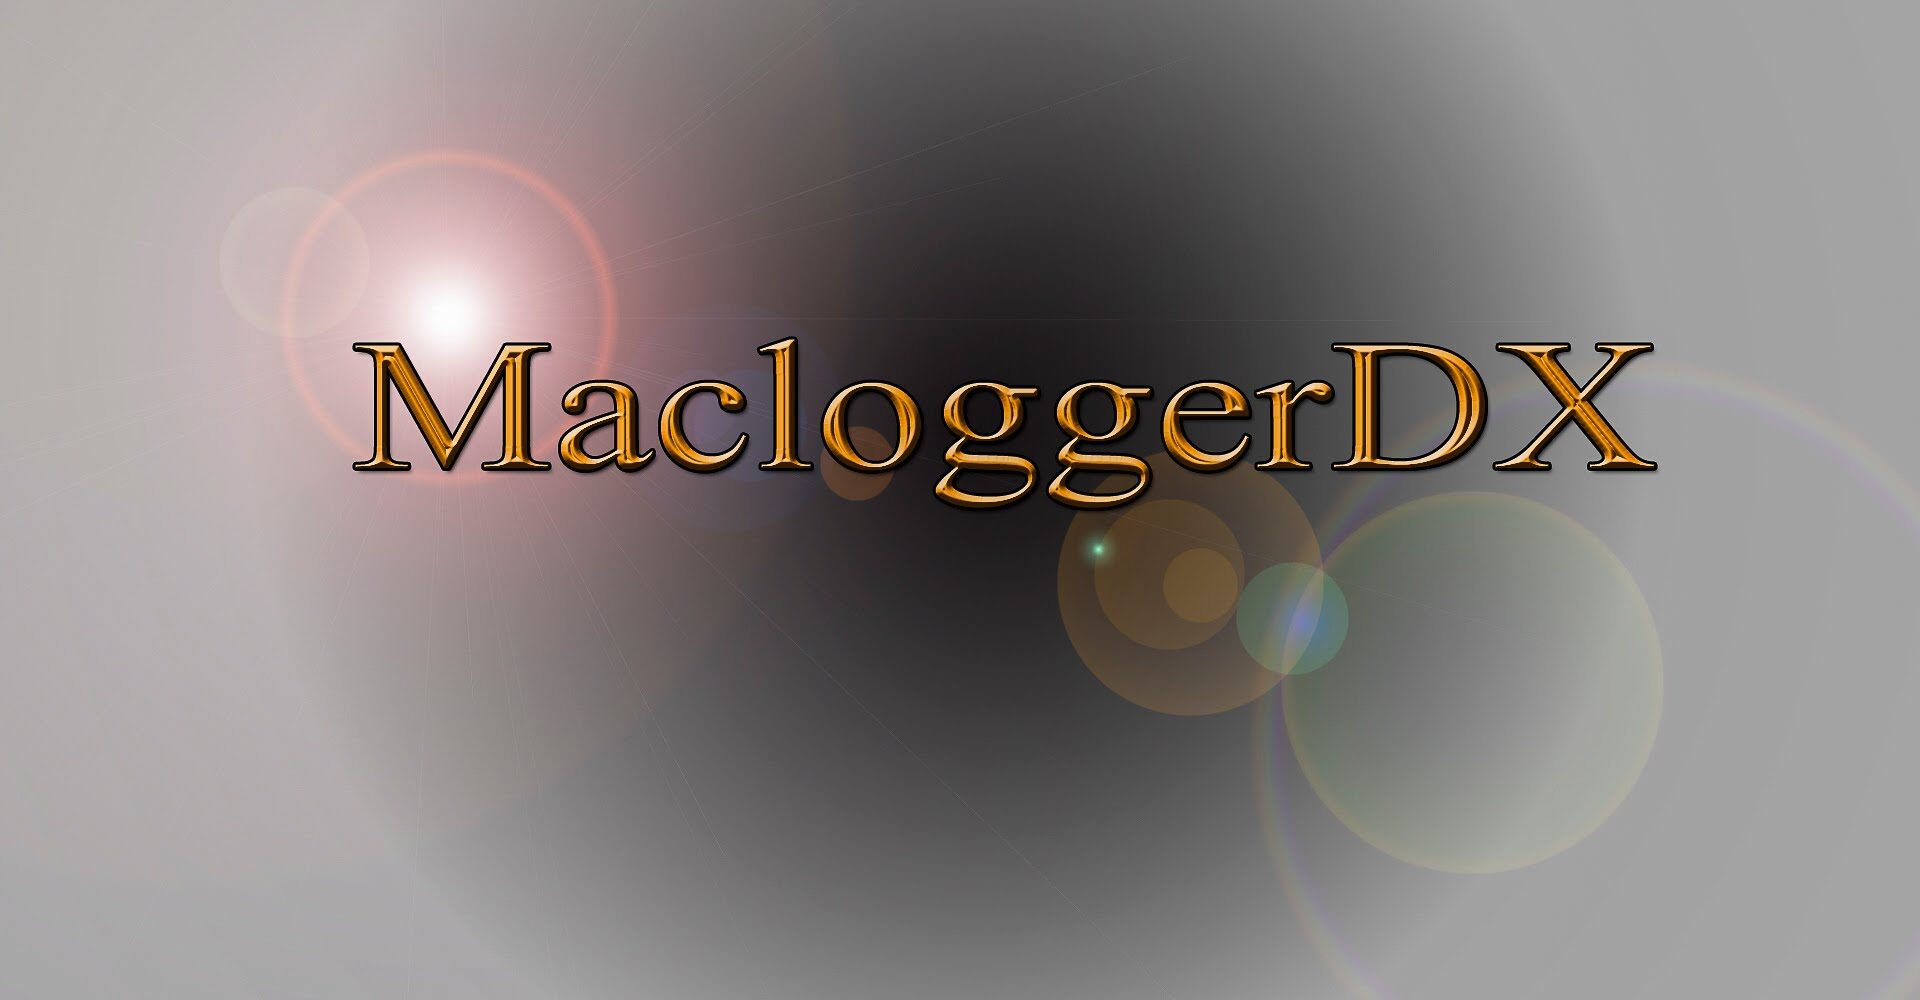 macloggerdx howto